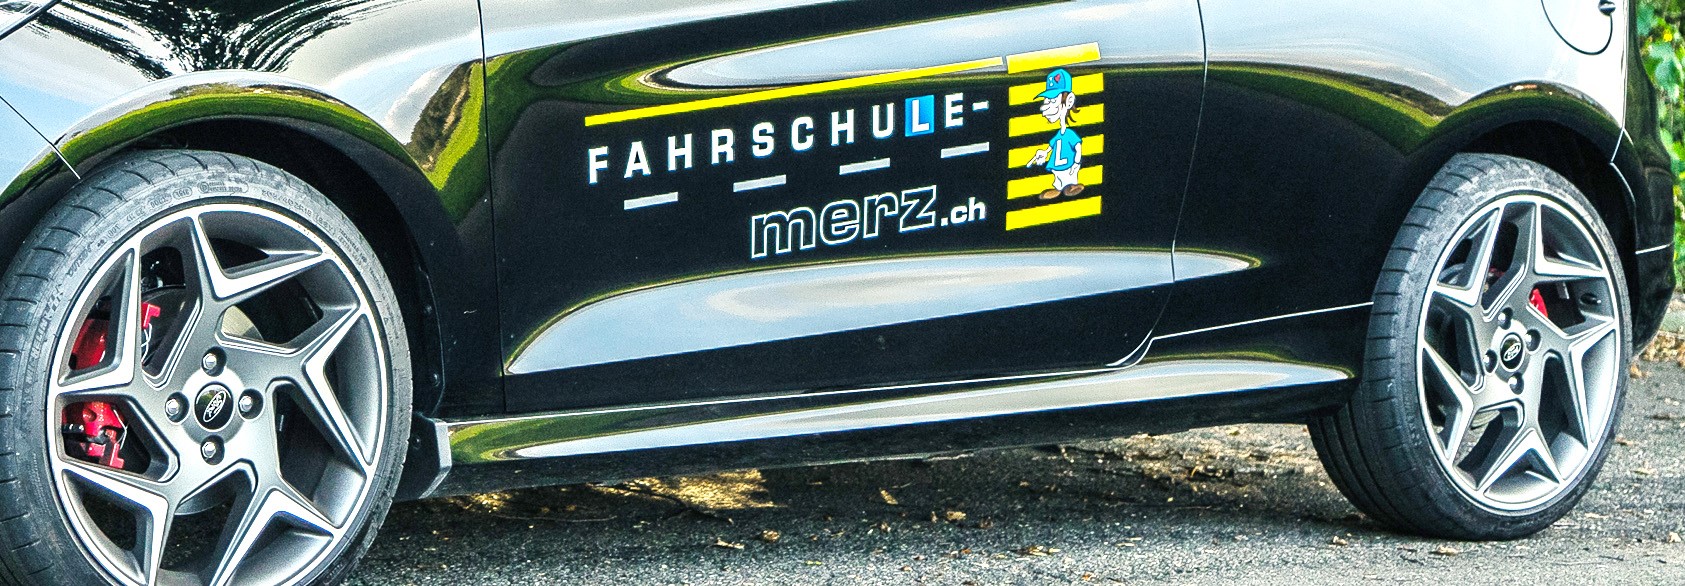 (c) Fahrschule-merz.ch